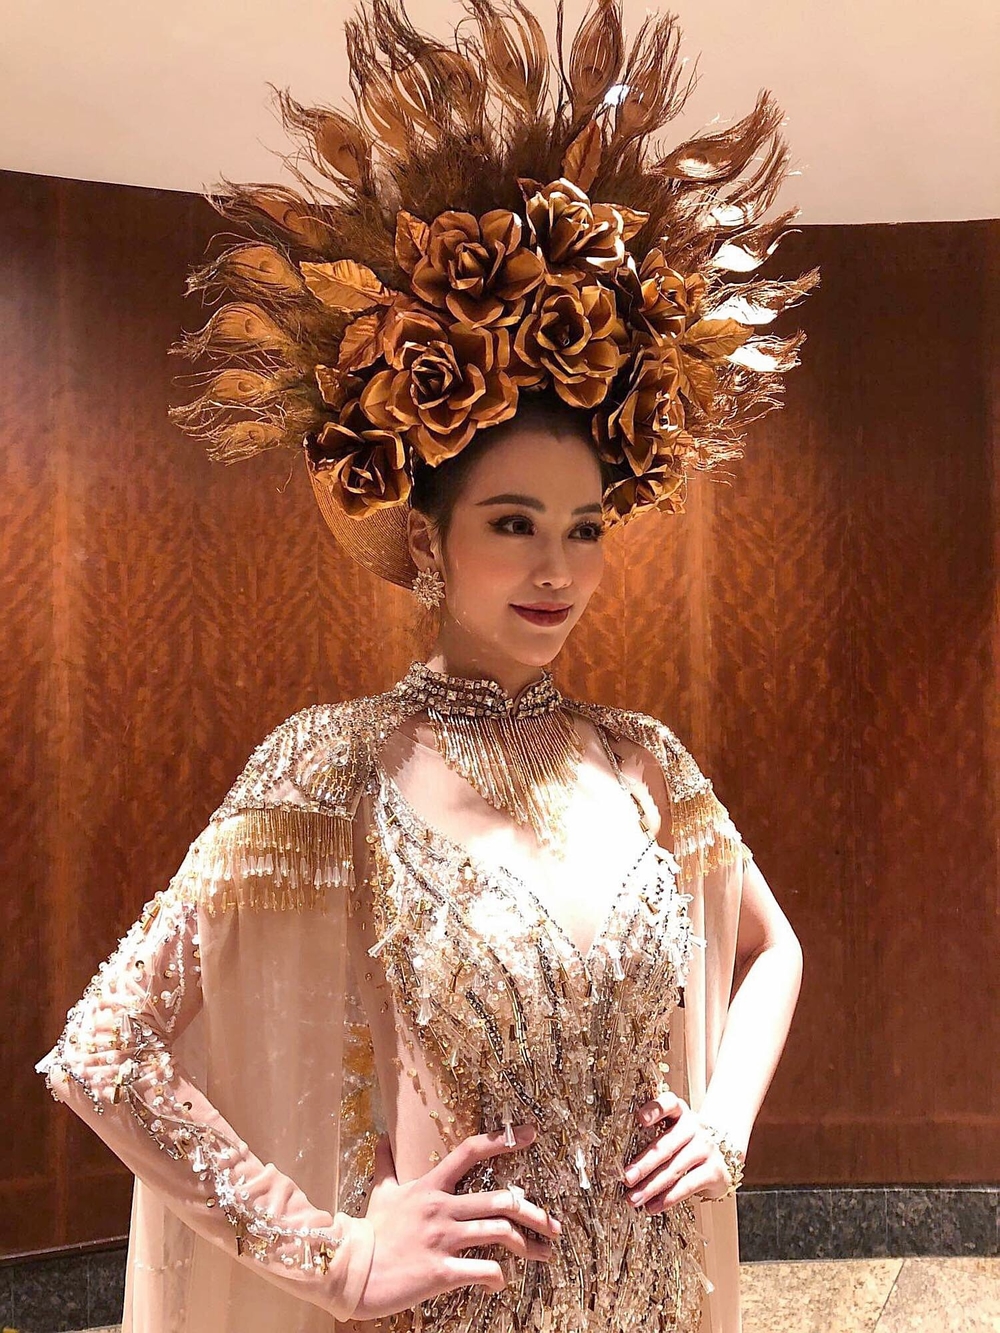 
Đăng quang Hoa hậu Trái Đất 2018, Hoa hậu Phương Khánh khiến người hâm mộ nước nhà không khỏi tự hào khi là mỹ nhân đầu tiên của Việt Nam đăng quang vị trí cao nhất của đấu trường nhan sắc thuộc Top 5 thế giới.